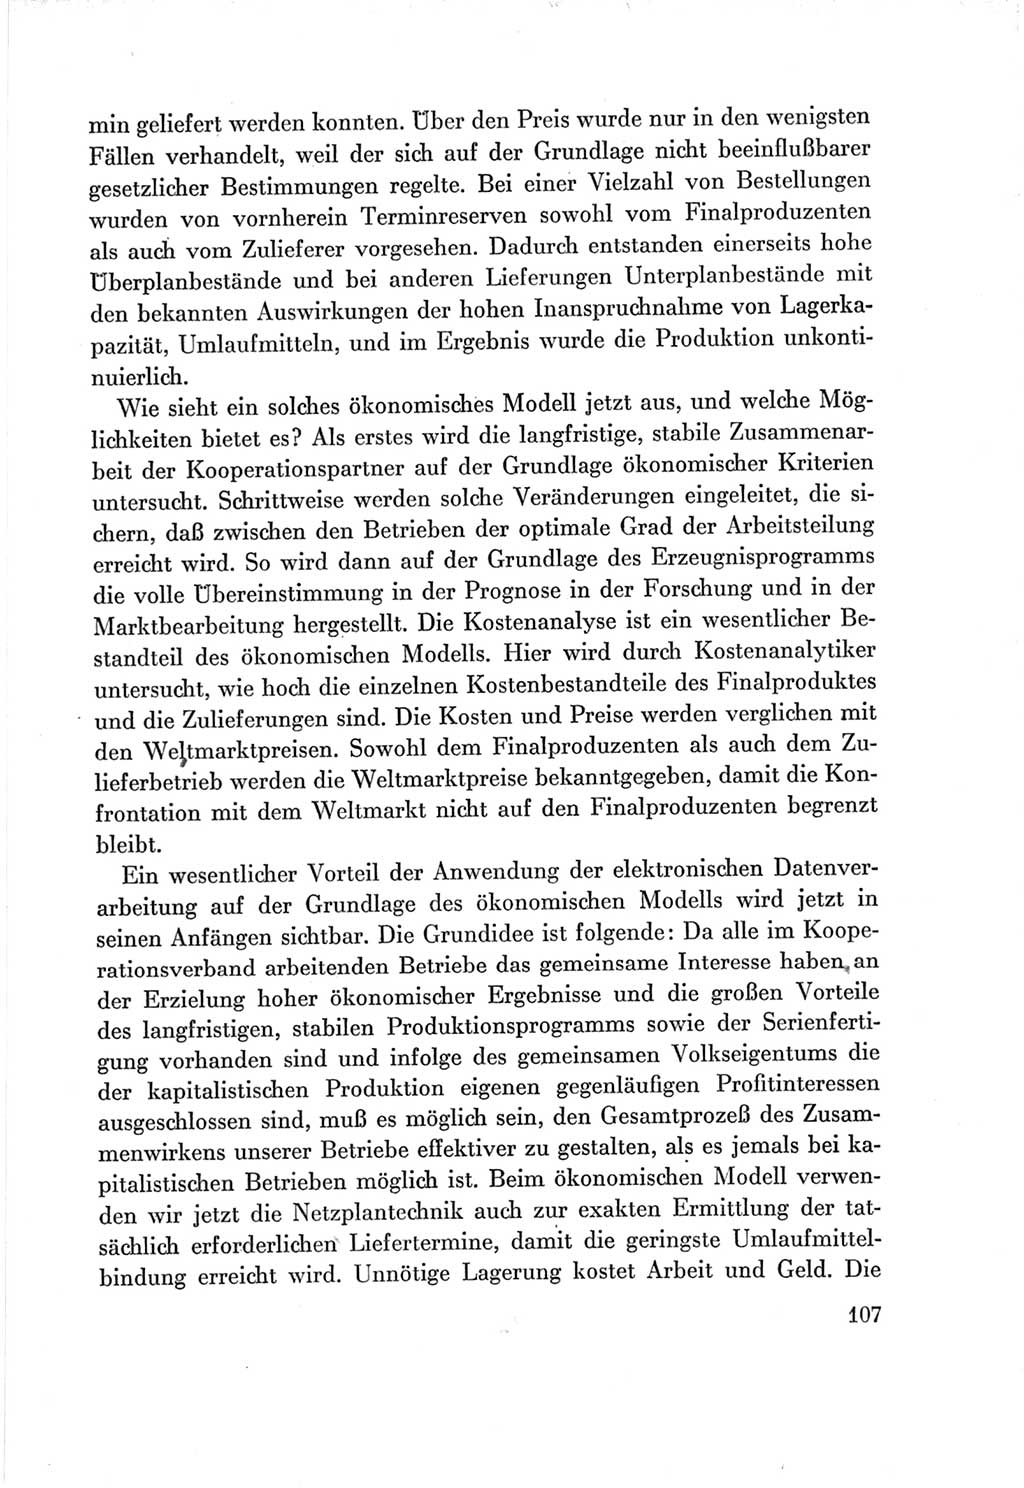 Protokoll der Verhandlungen des Ⅶ. Parteitages der Sozialistischen Einheitspartei Deutschlands (SED) [Deutsche Demokratische Republik (DDR)] 1967, Band Ⅲ, Seite 107 (Prot. Verh. Ⅶ. PT SED DDR 1967, Bd. Ⅲ, S. 107)